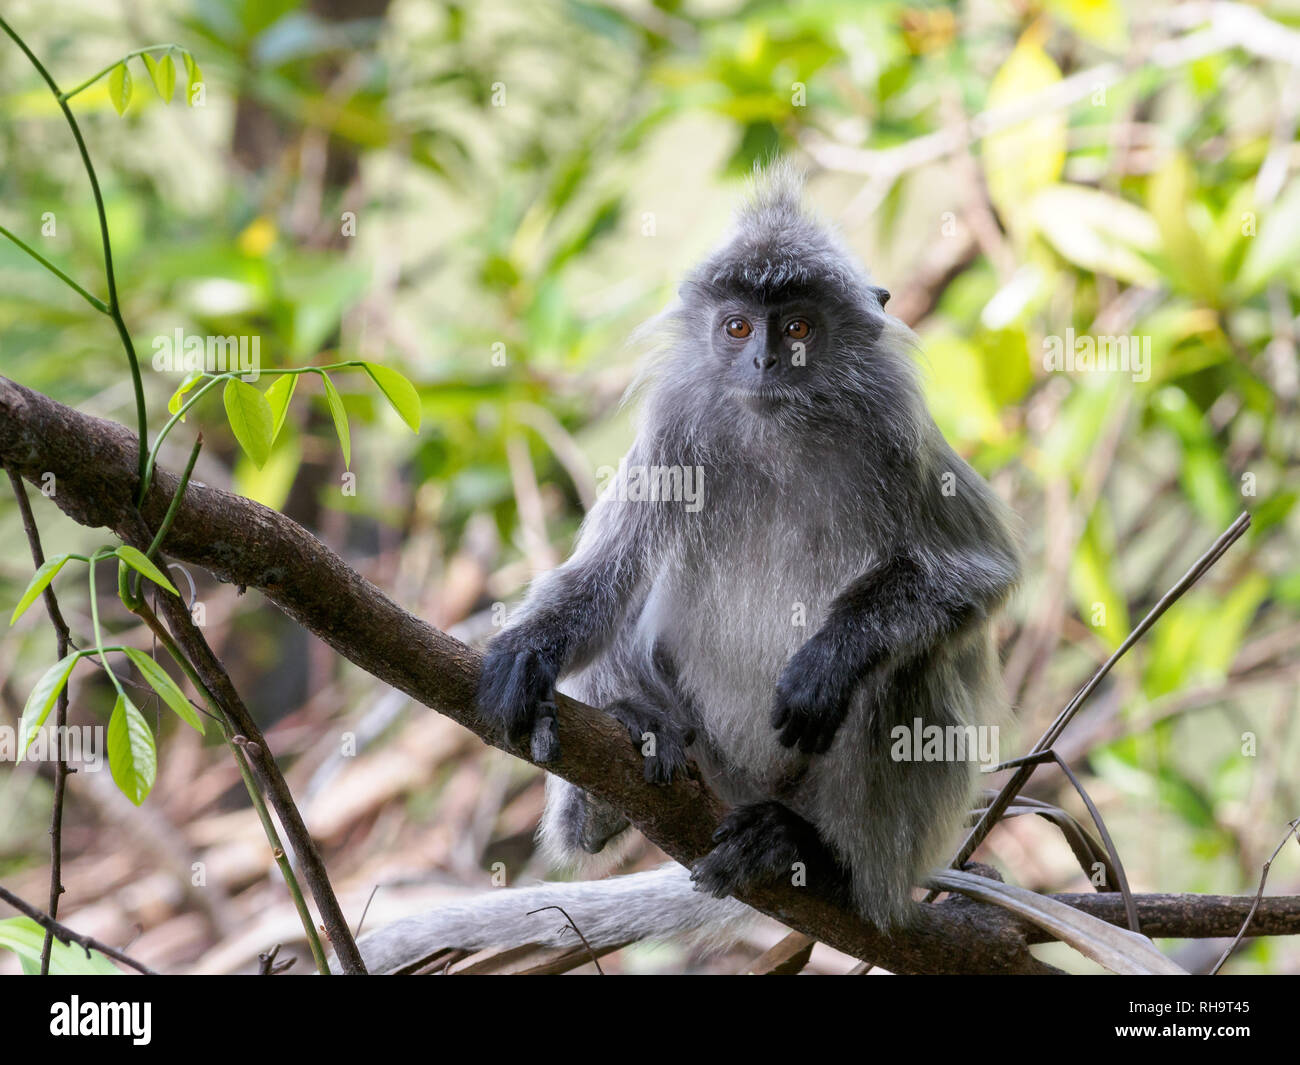 Silvered Leaf Monkey (Trachypithecus cristatus), Bako National Park, Borneo, Malaysia Stock Photo